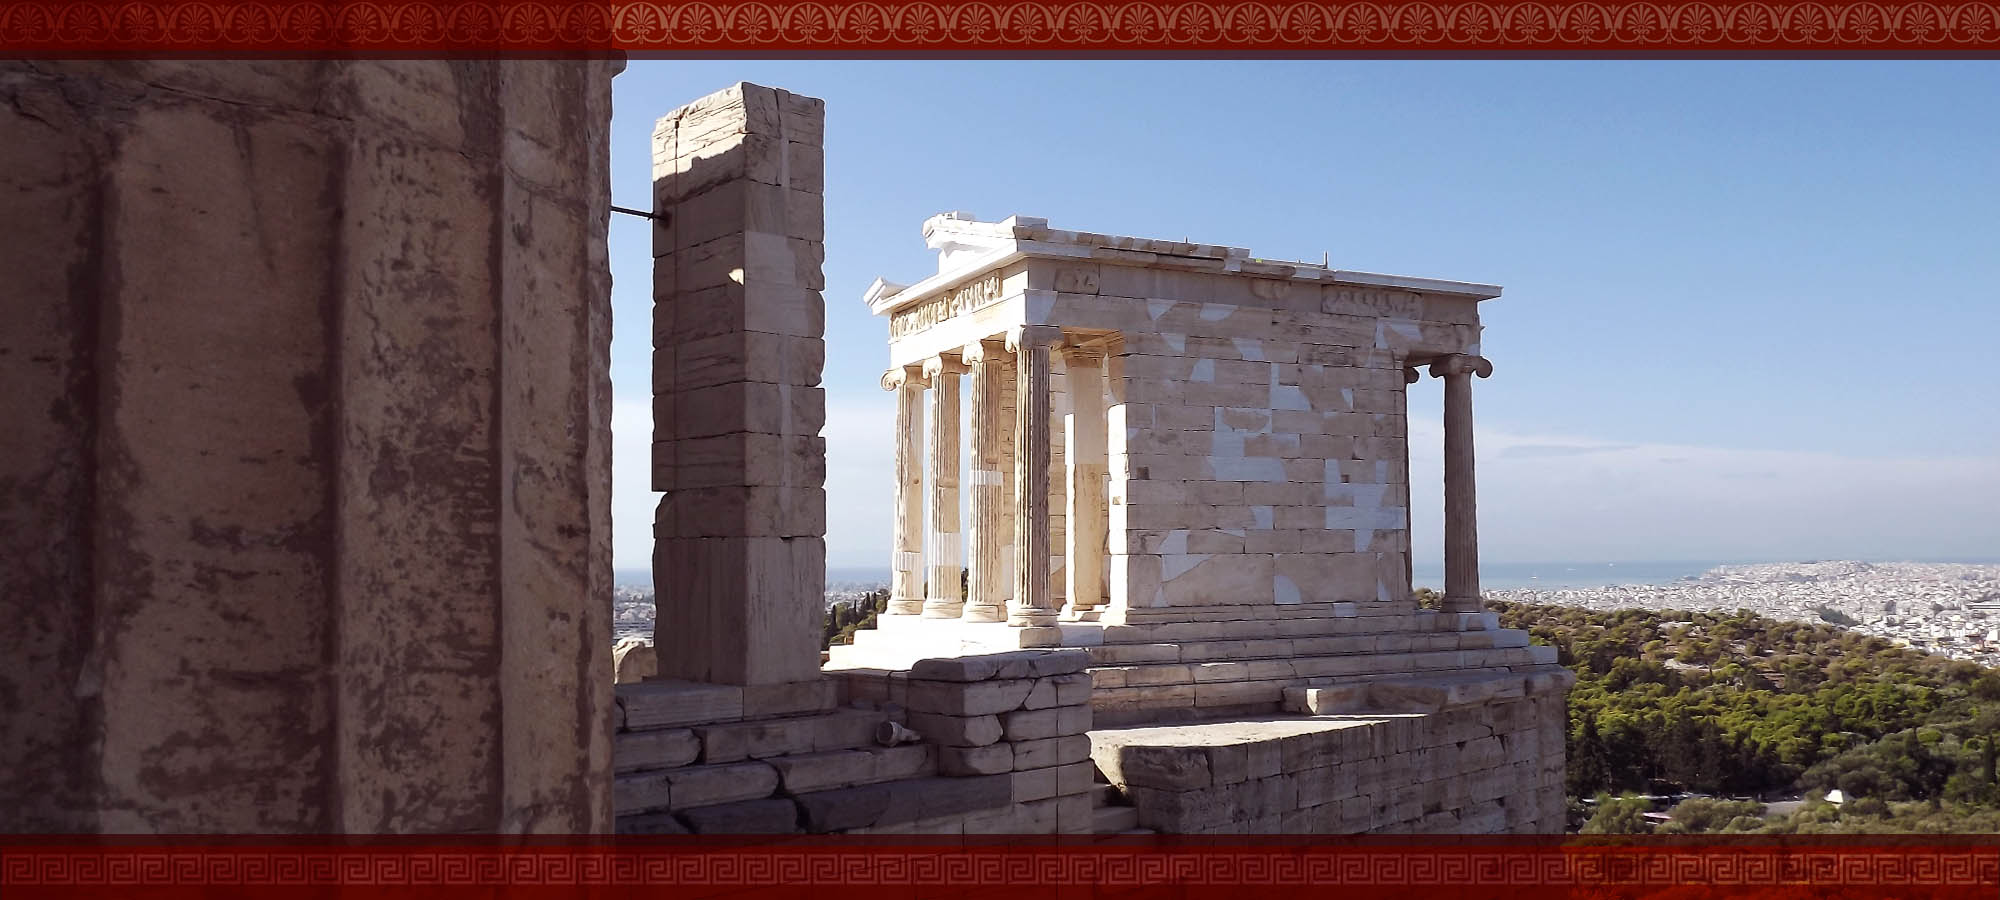 TEMPLE OF ATHENA NIKE: ATHENS